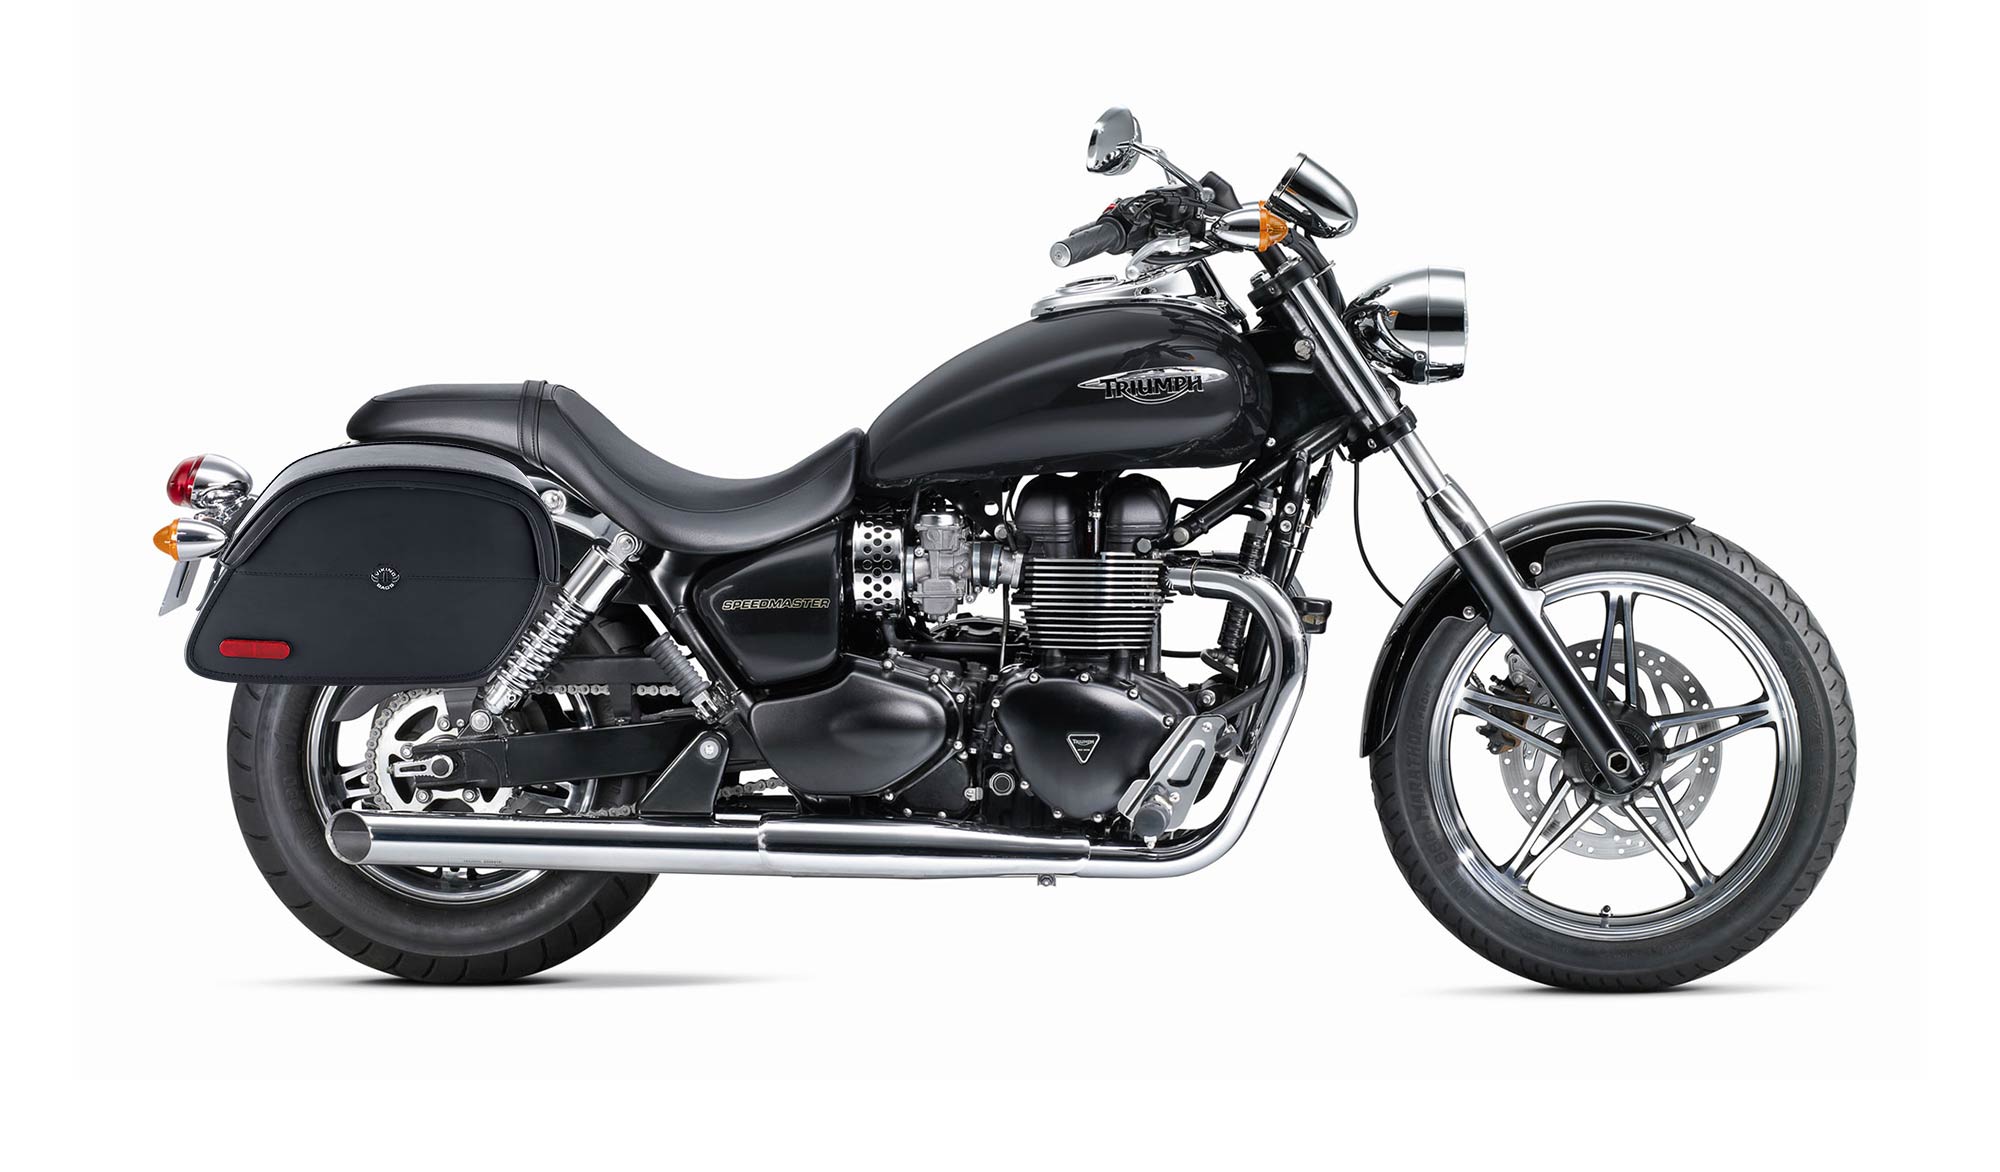 Viking California Large Triumph Speedmaster Leather Motorcycle Saddlebags on Bike Photo @expand